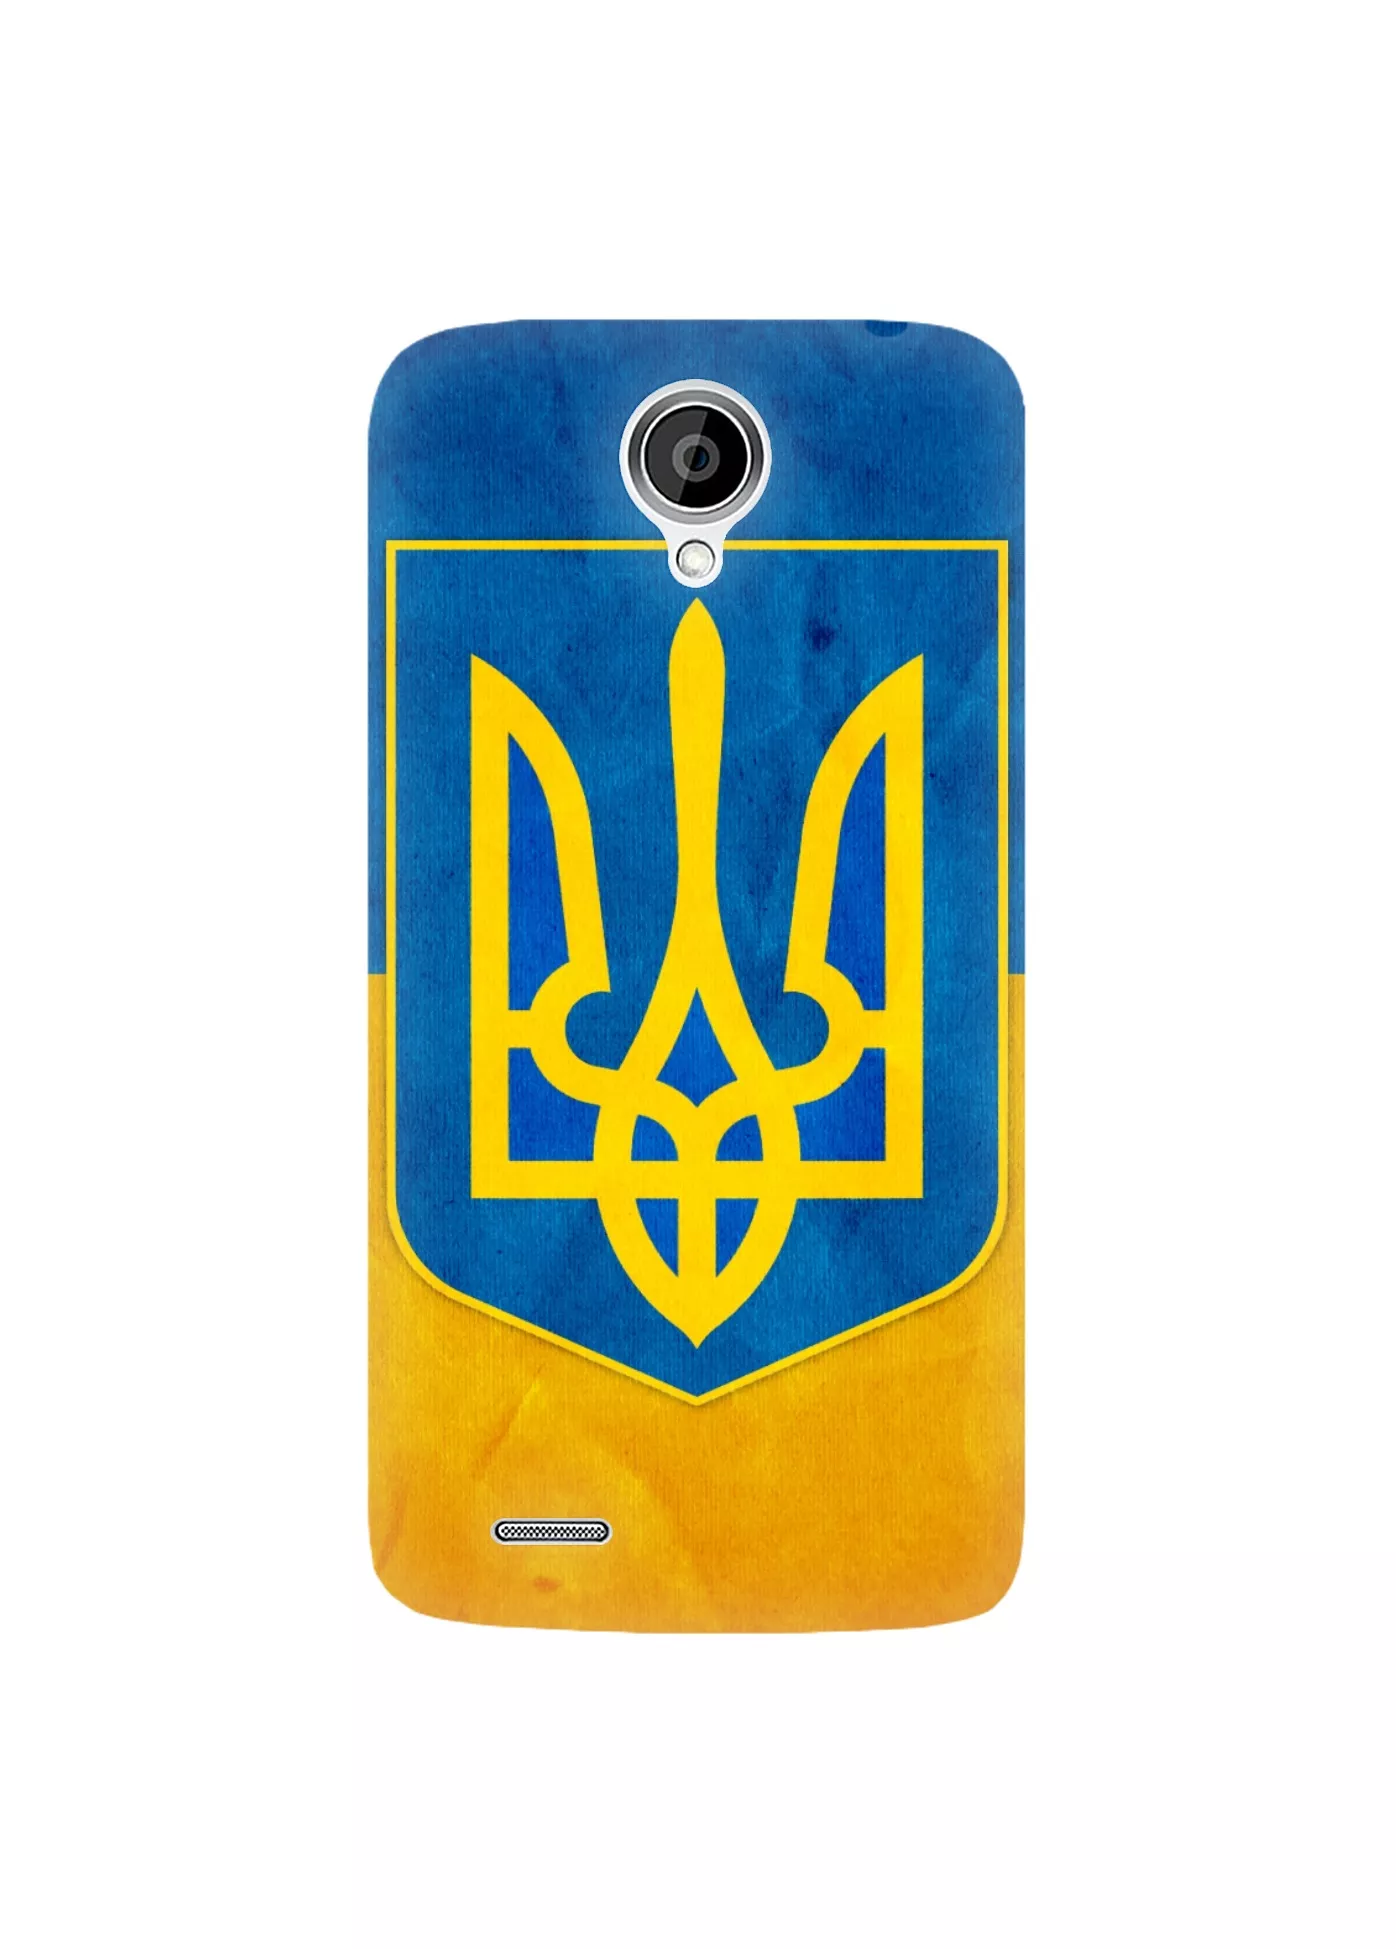 Чехол на Леново А830 - Герб Украины